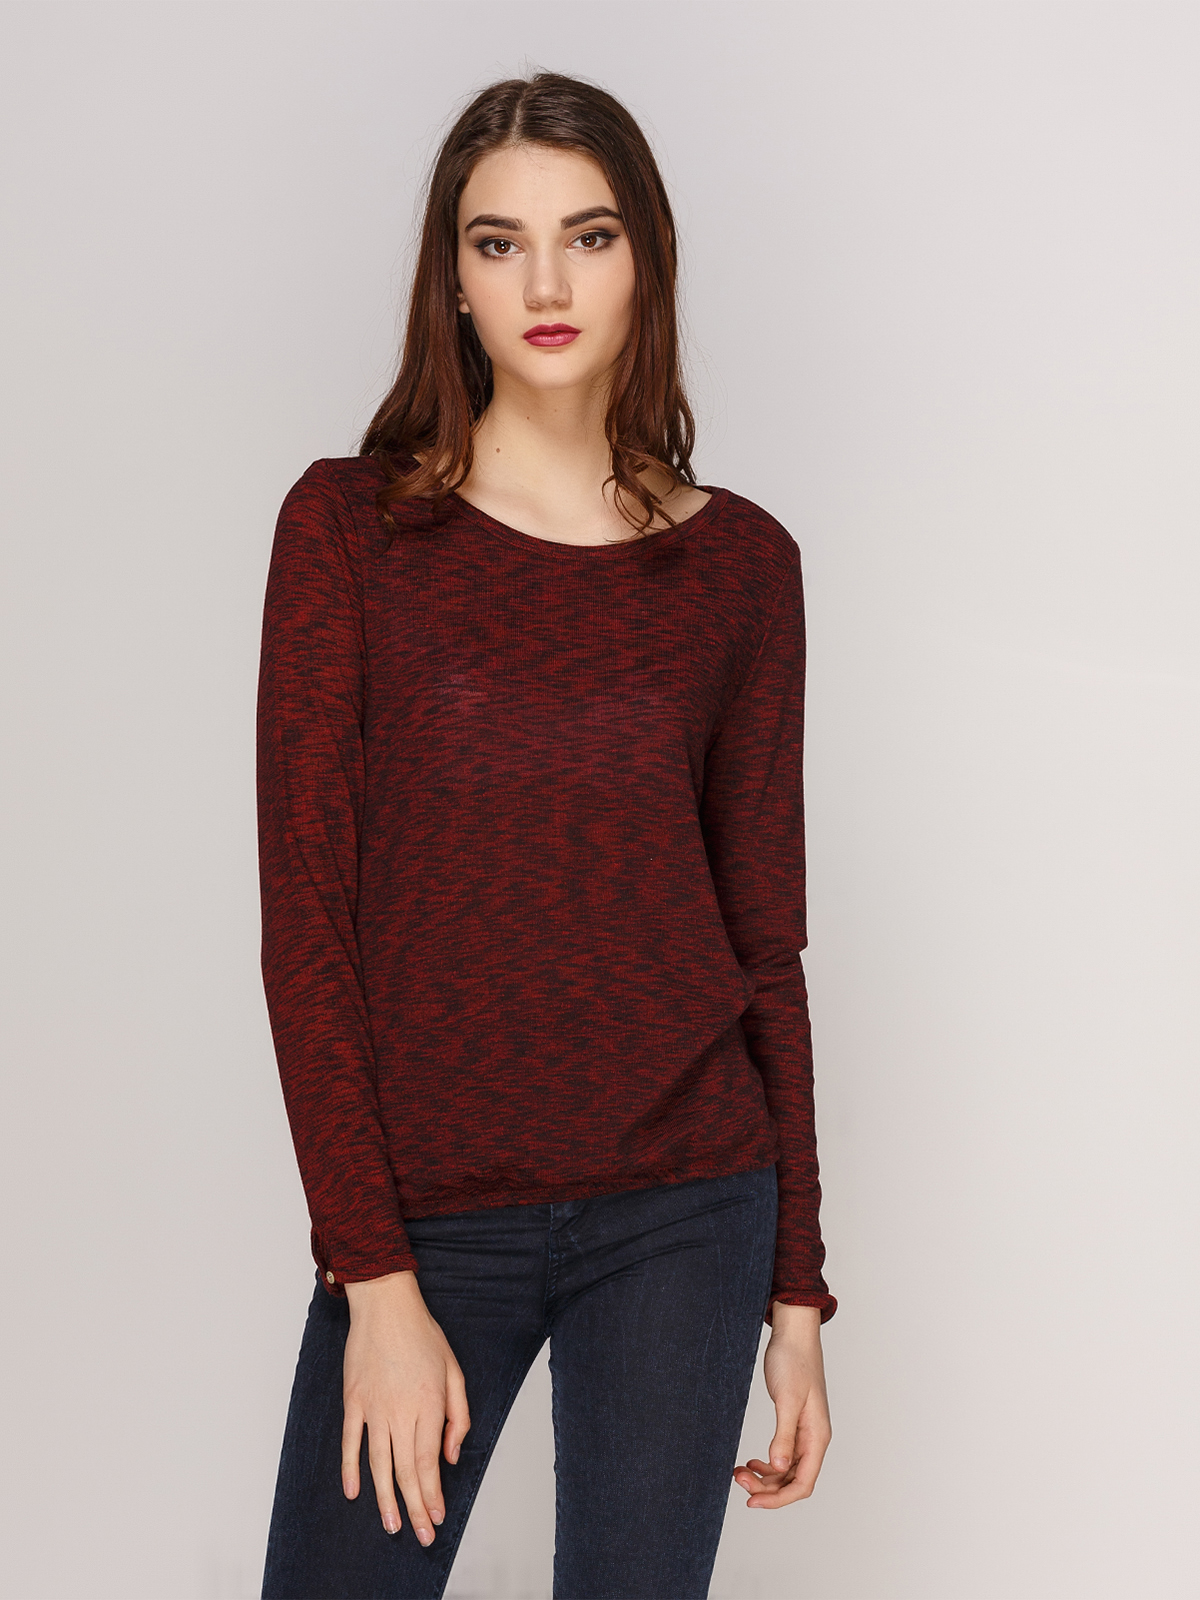 Бордовый свитер женский